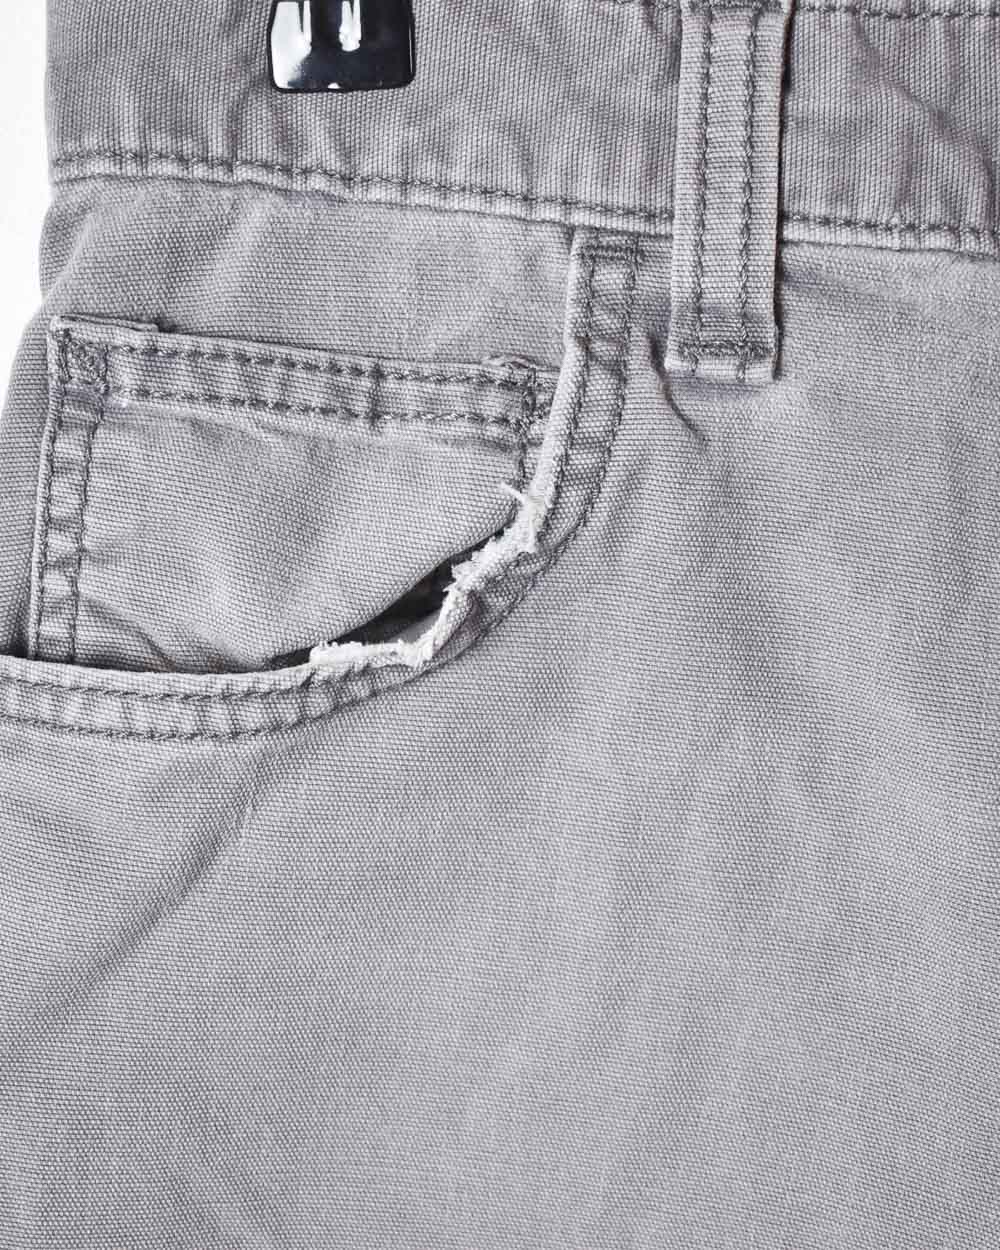 Grey Carhartt Denim Shorts - W30